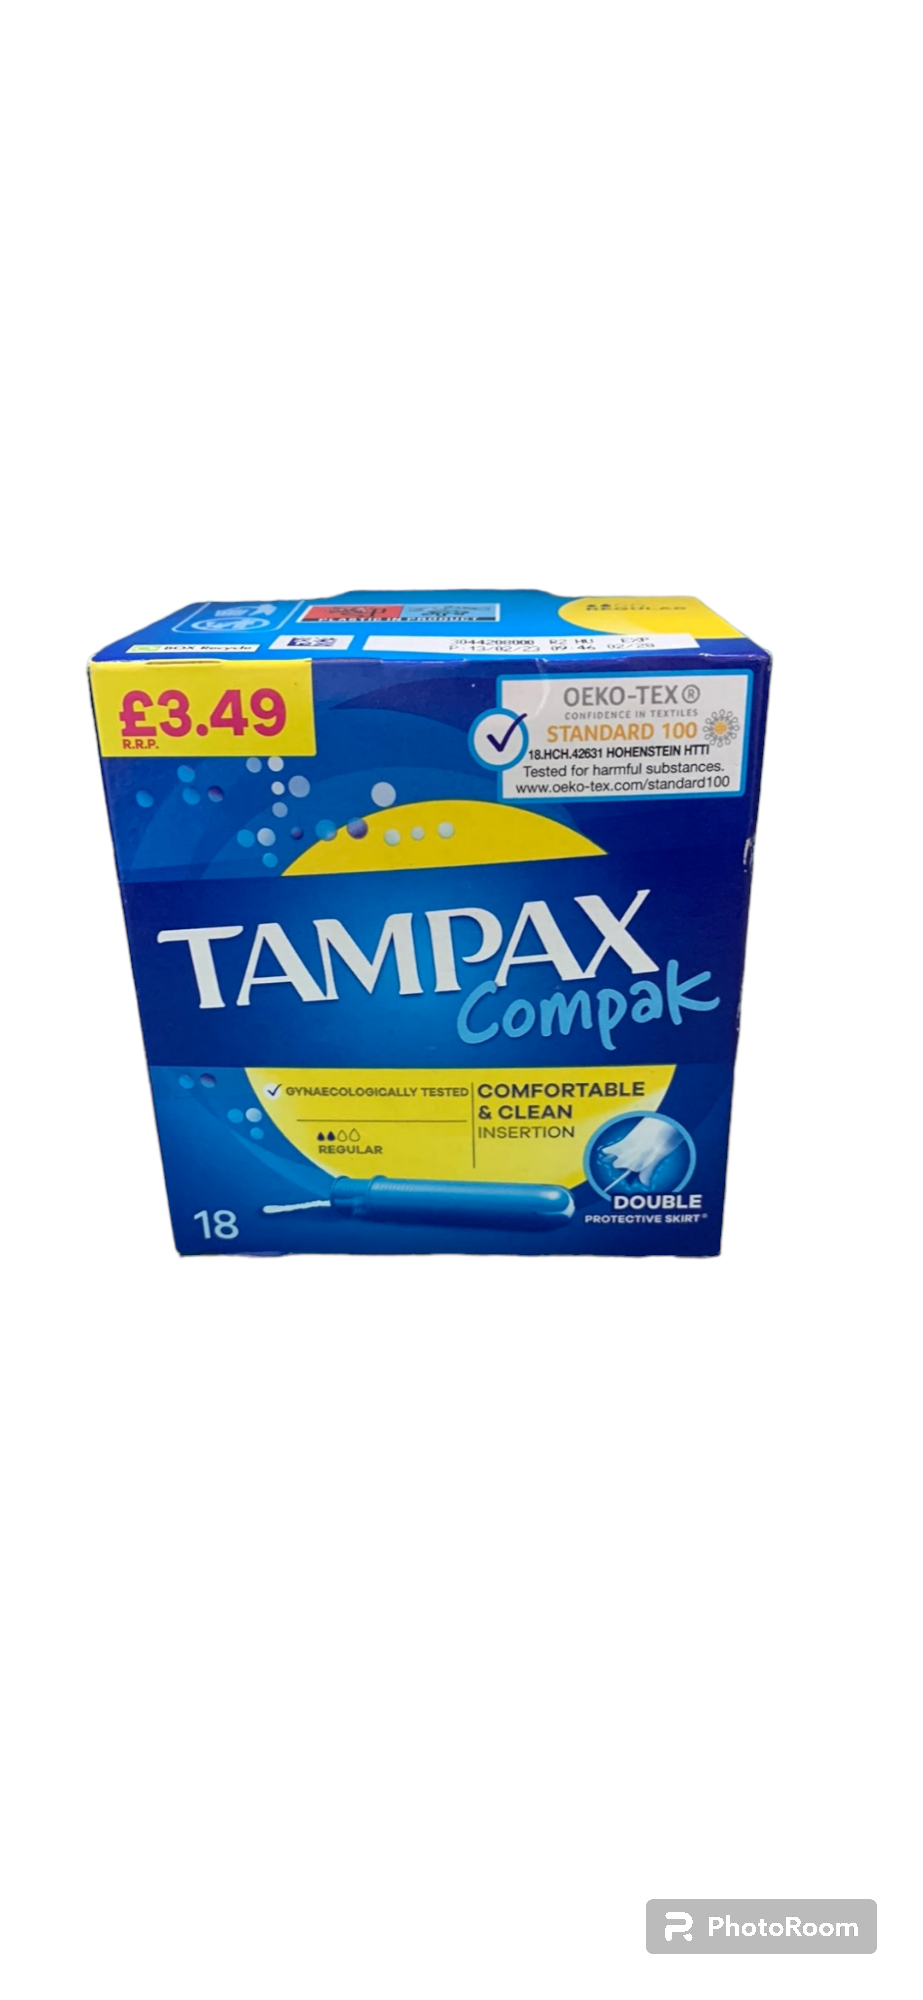 Tampax compak- Regular 18pk